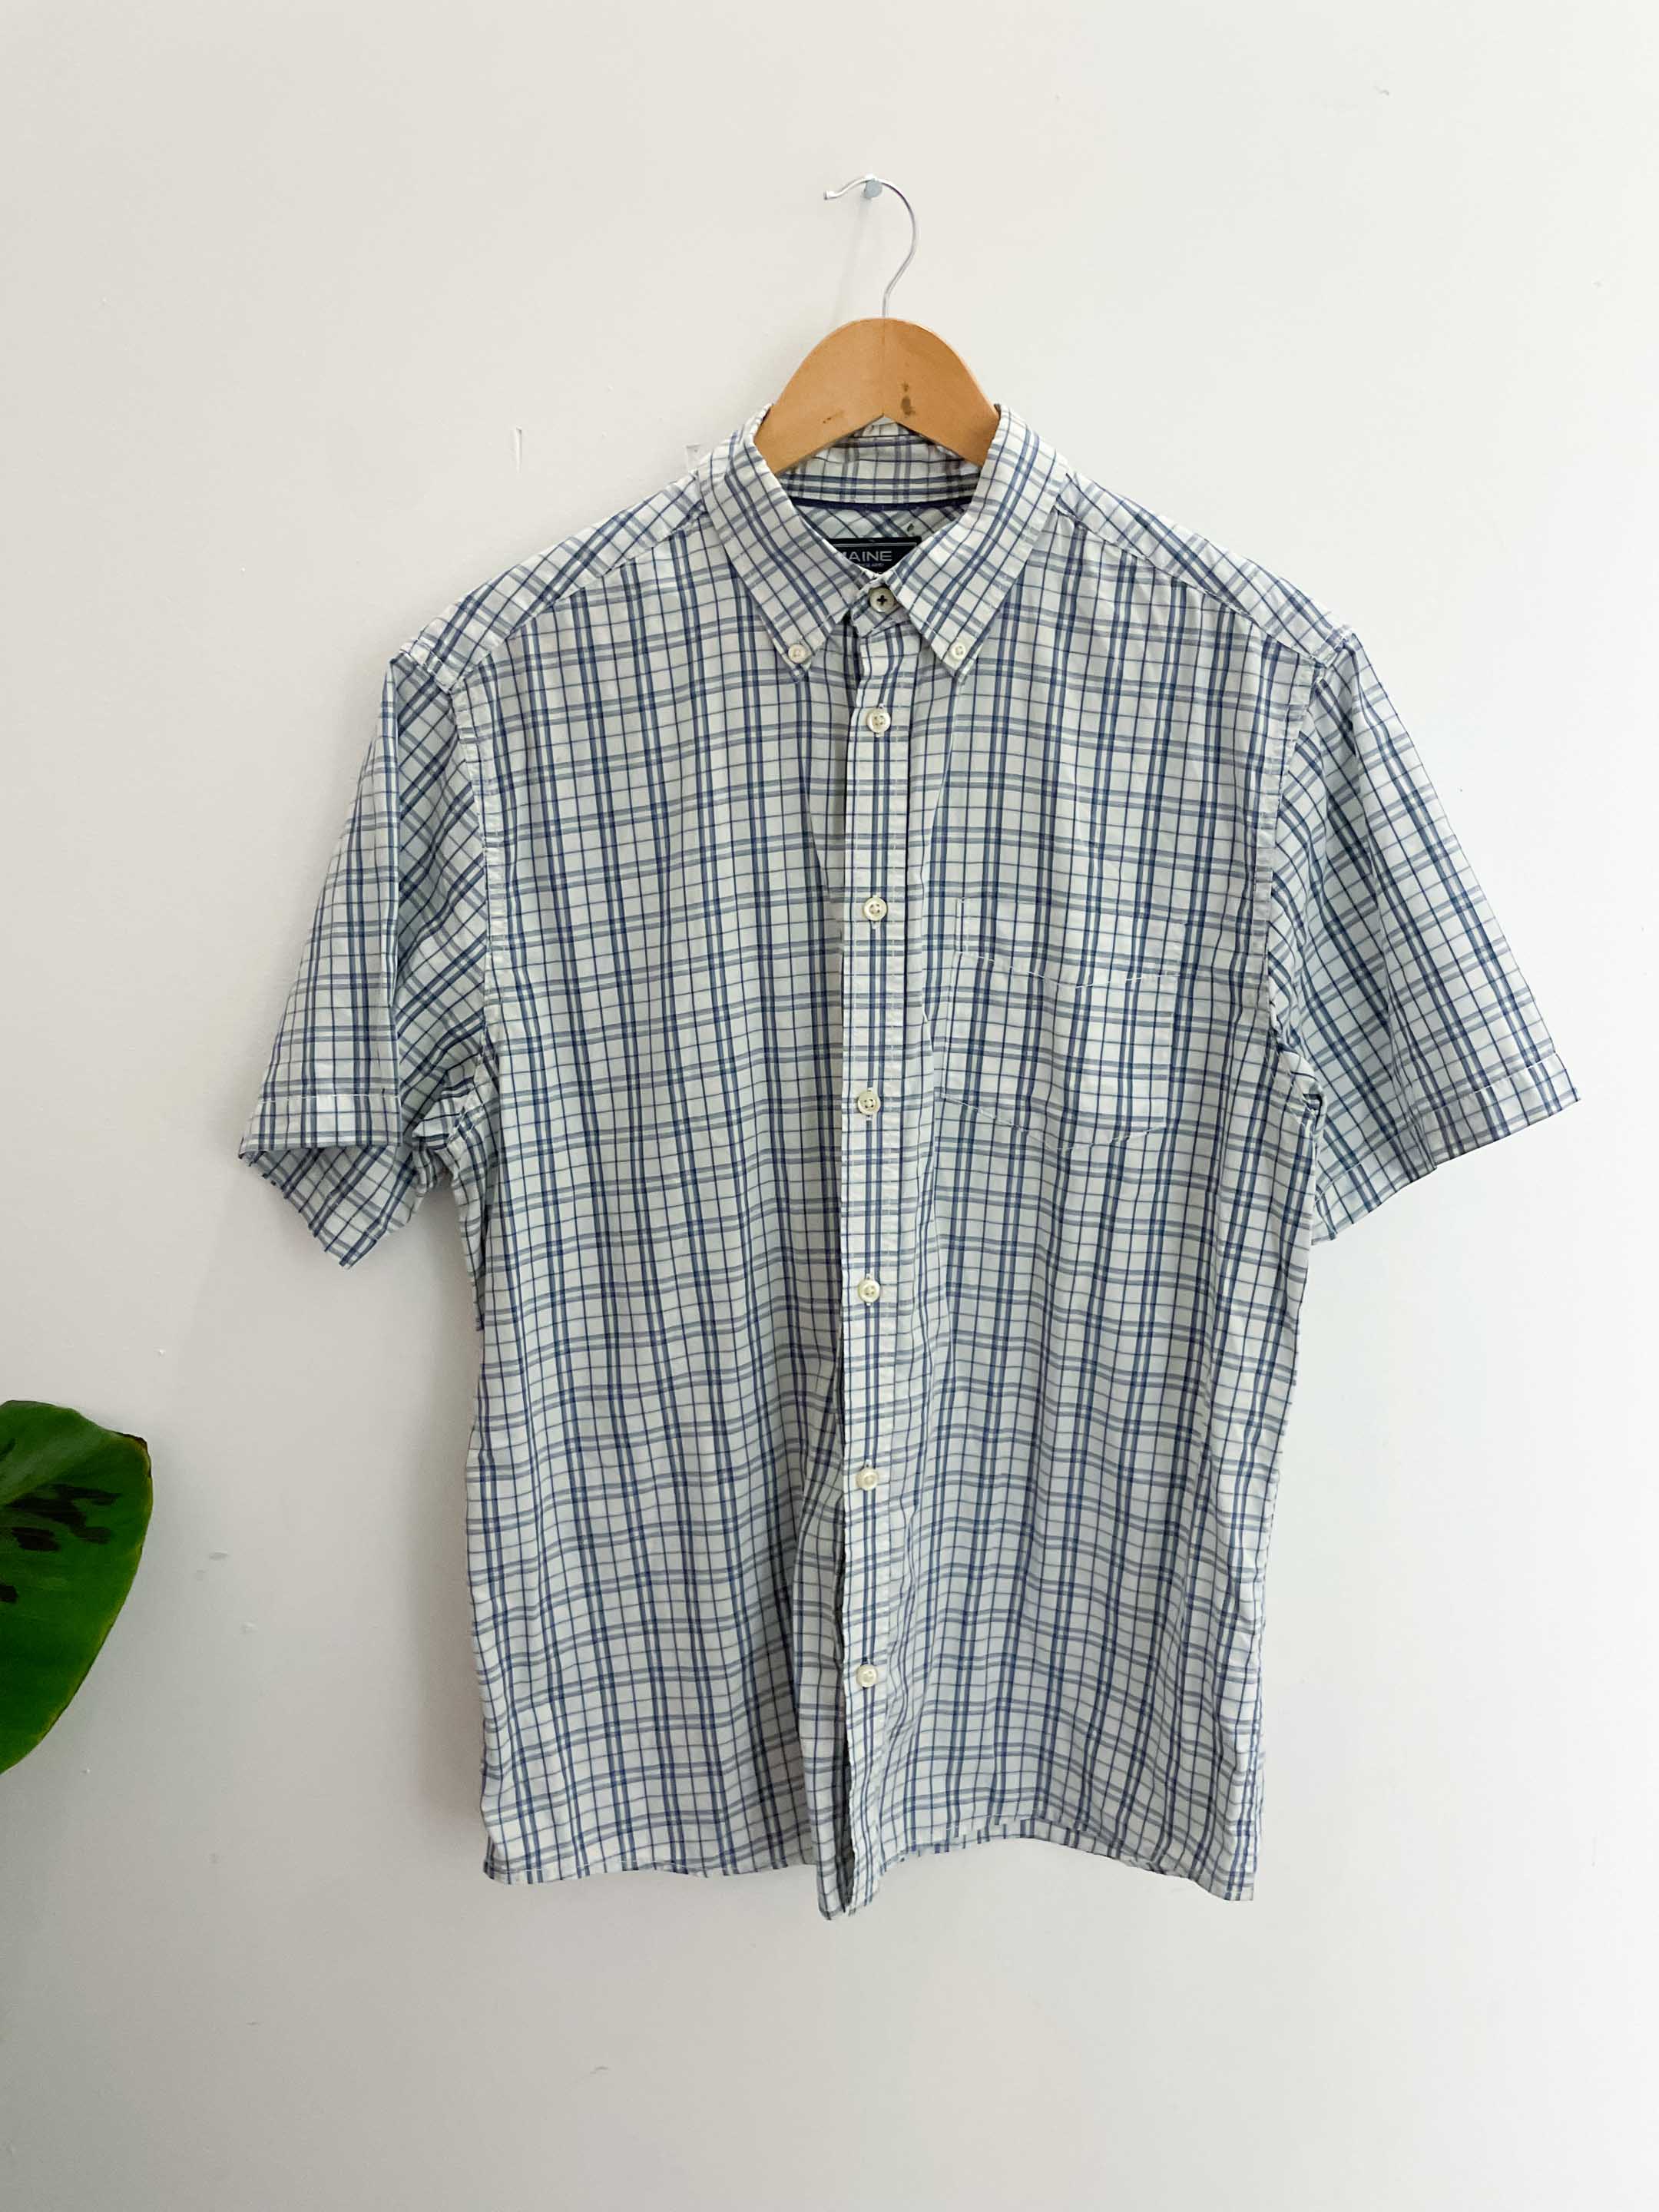 Vintage maine blue patterned mens short sleeve shirt size M